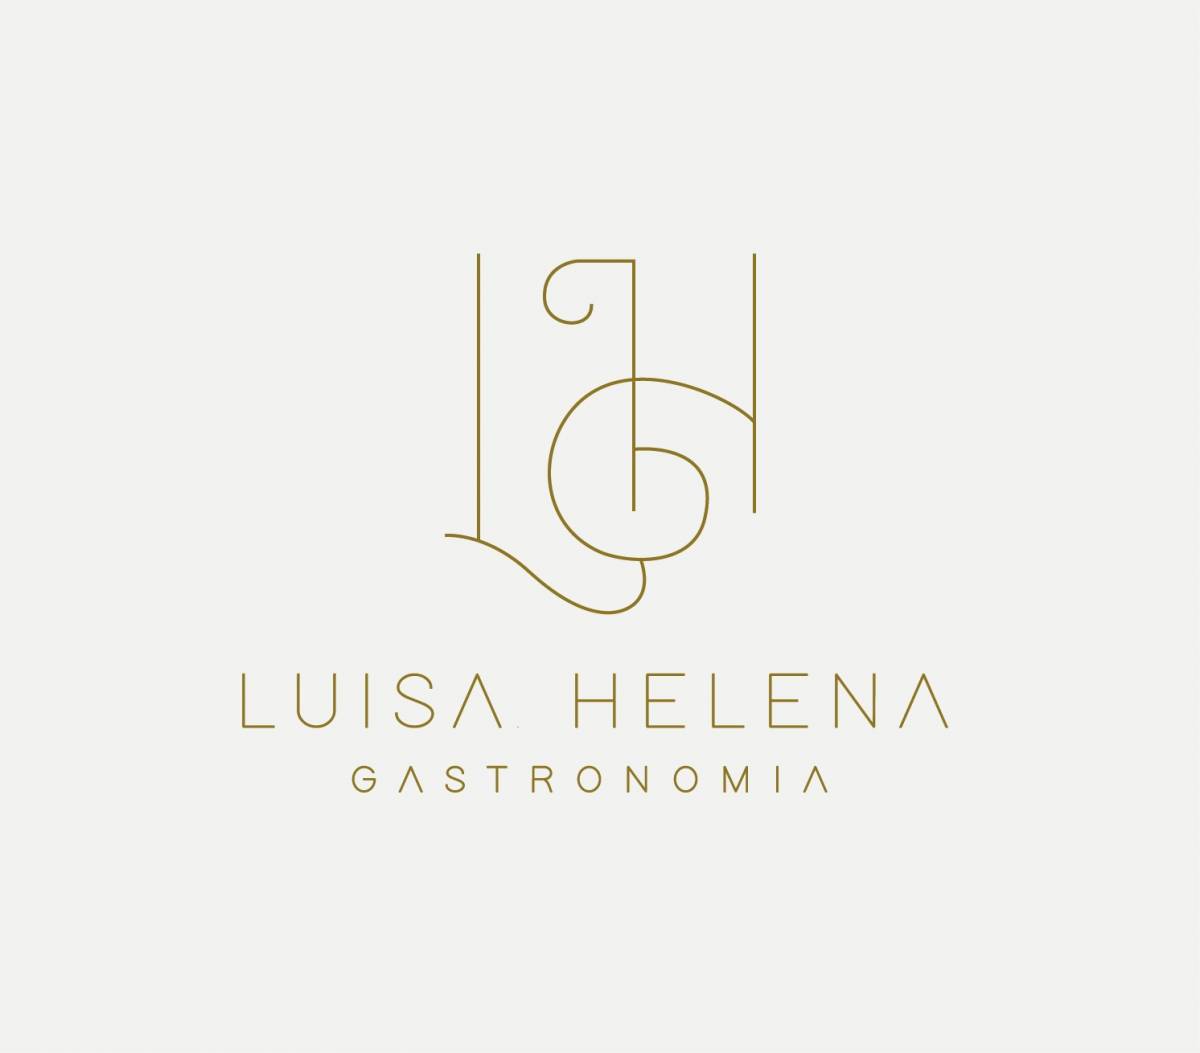 Luisa Helena Cakes&Cupcakes - Viseu - Aulas de Culinária